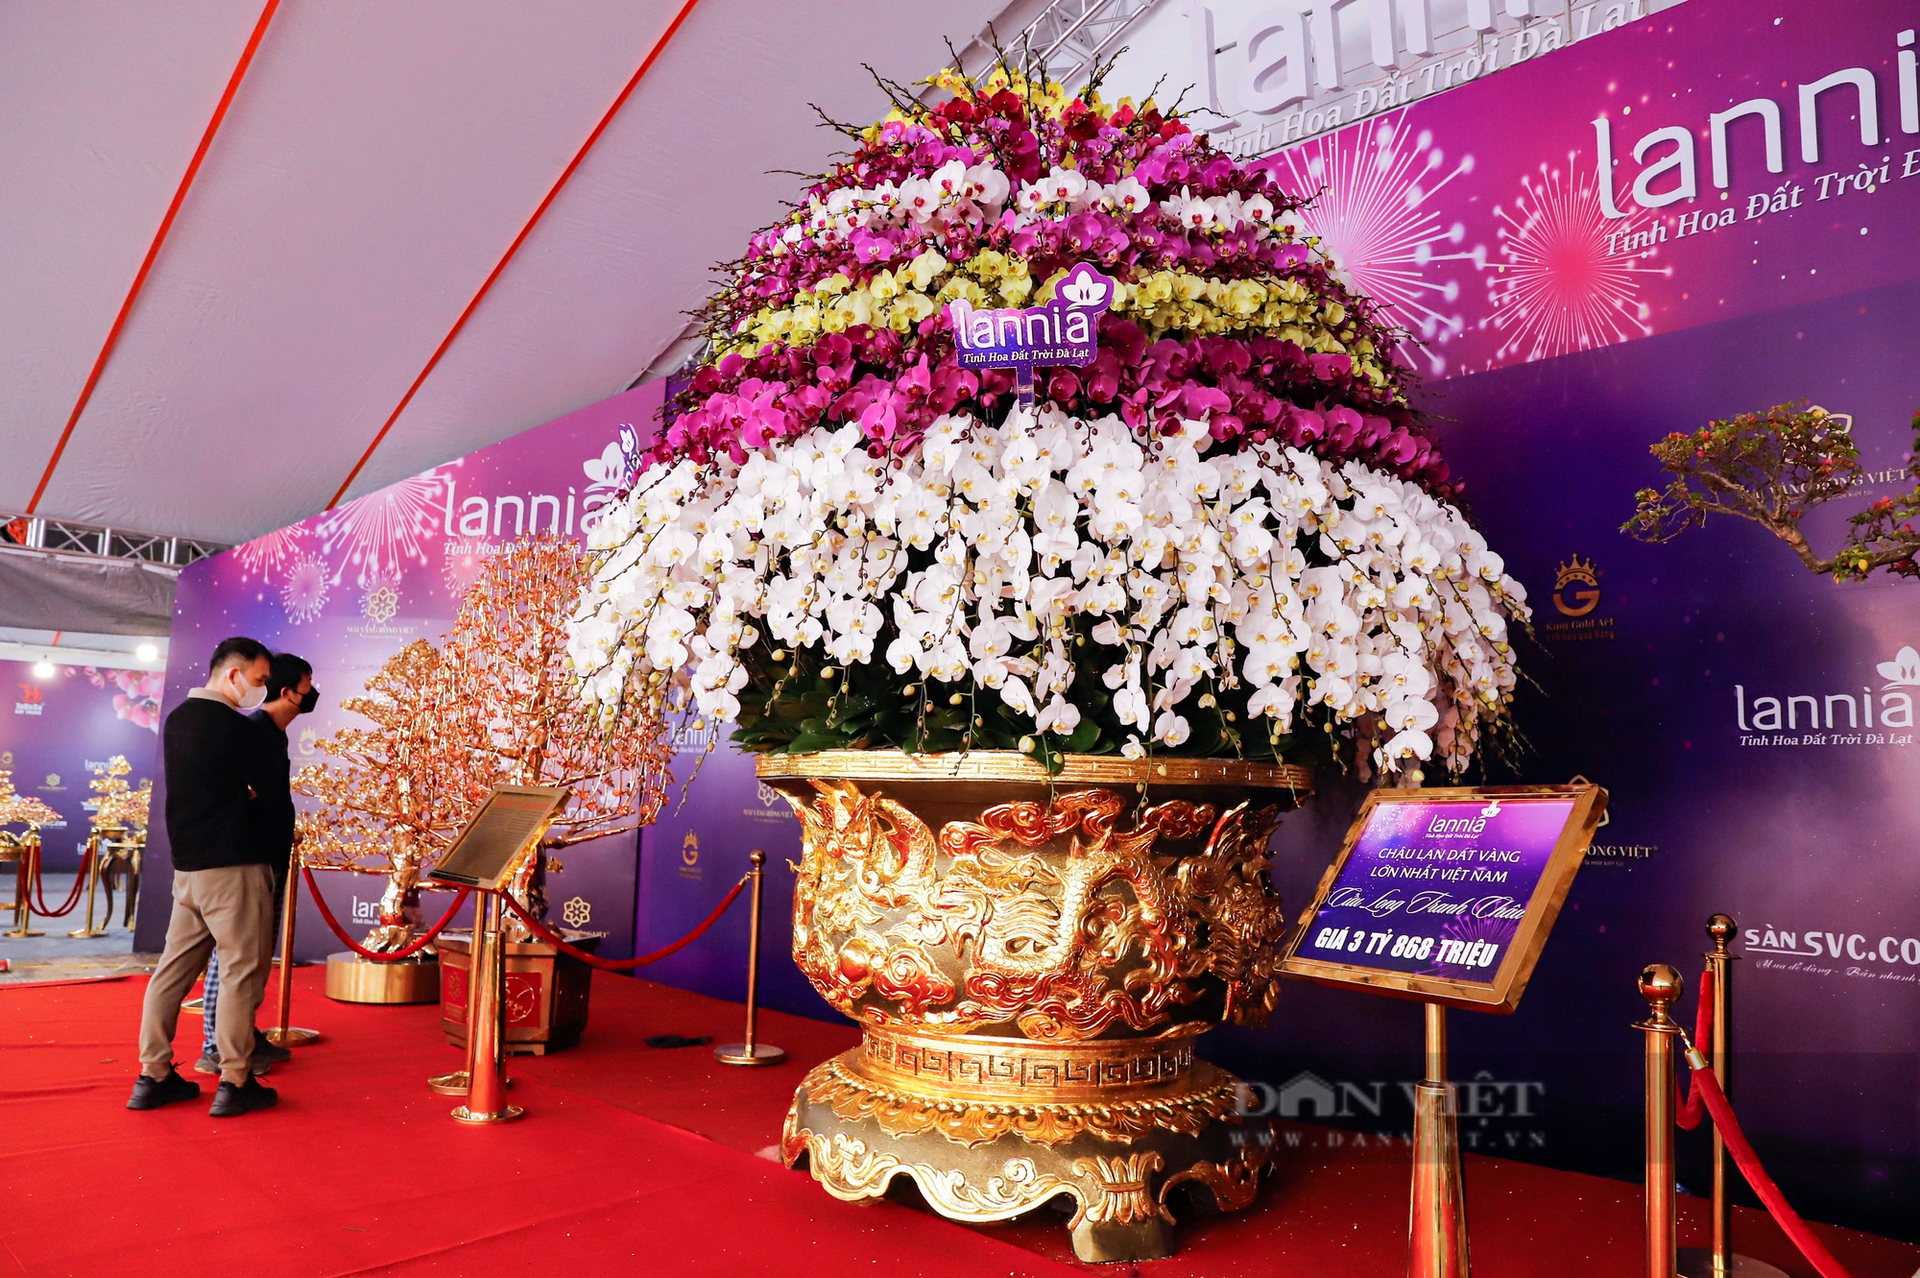 Cận cảnh chậu lan hồ điệp 9 tầng hoa nặng hơn 1 tấn giá 3,86 tỷ đồng ở Hà Nội- Ảnh 5.